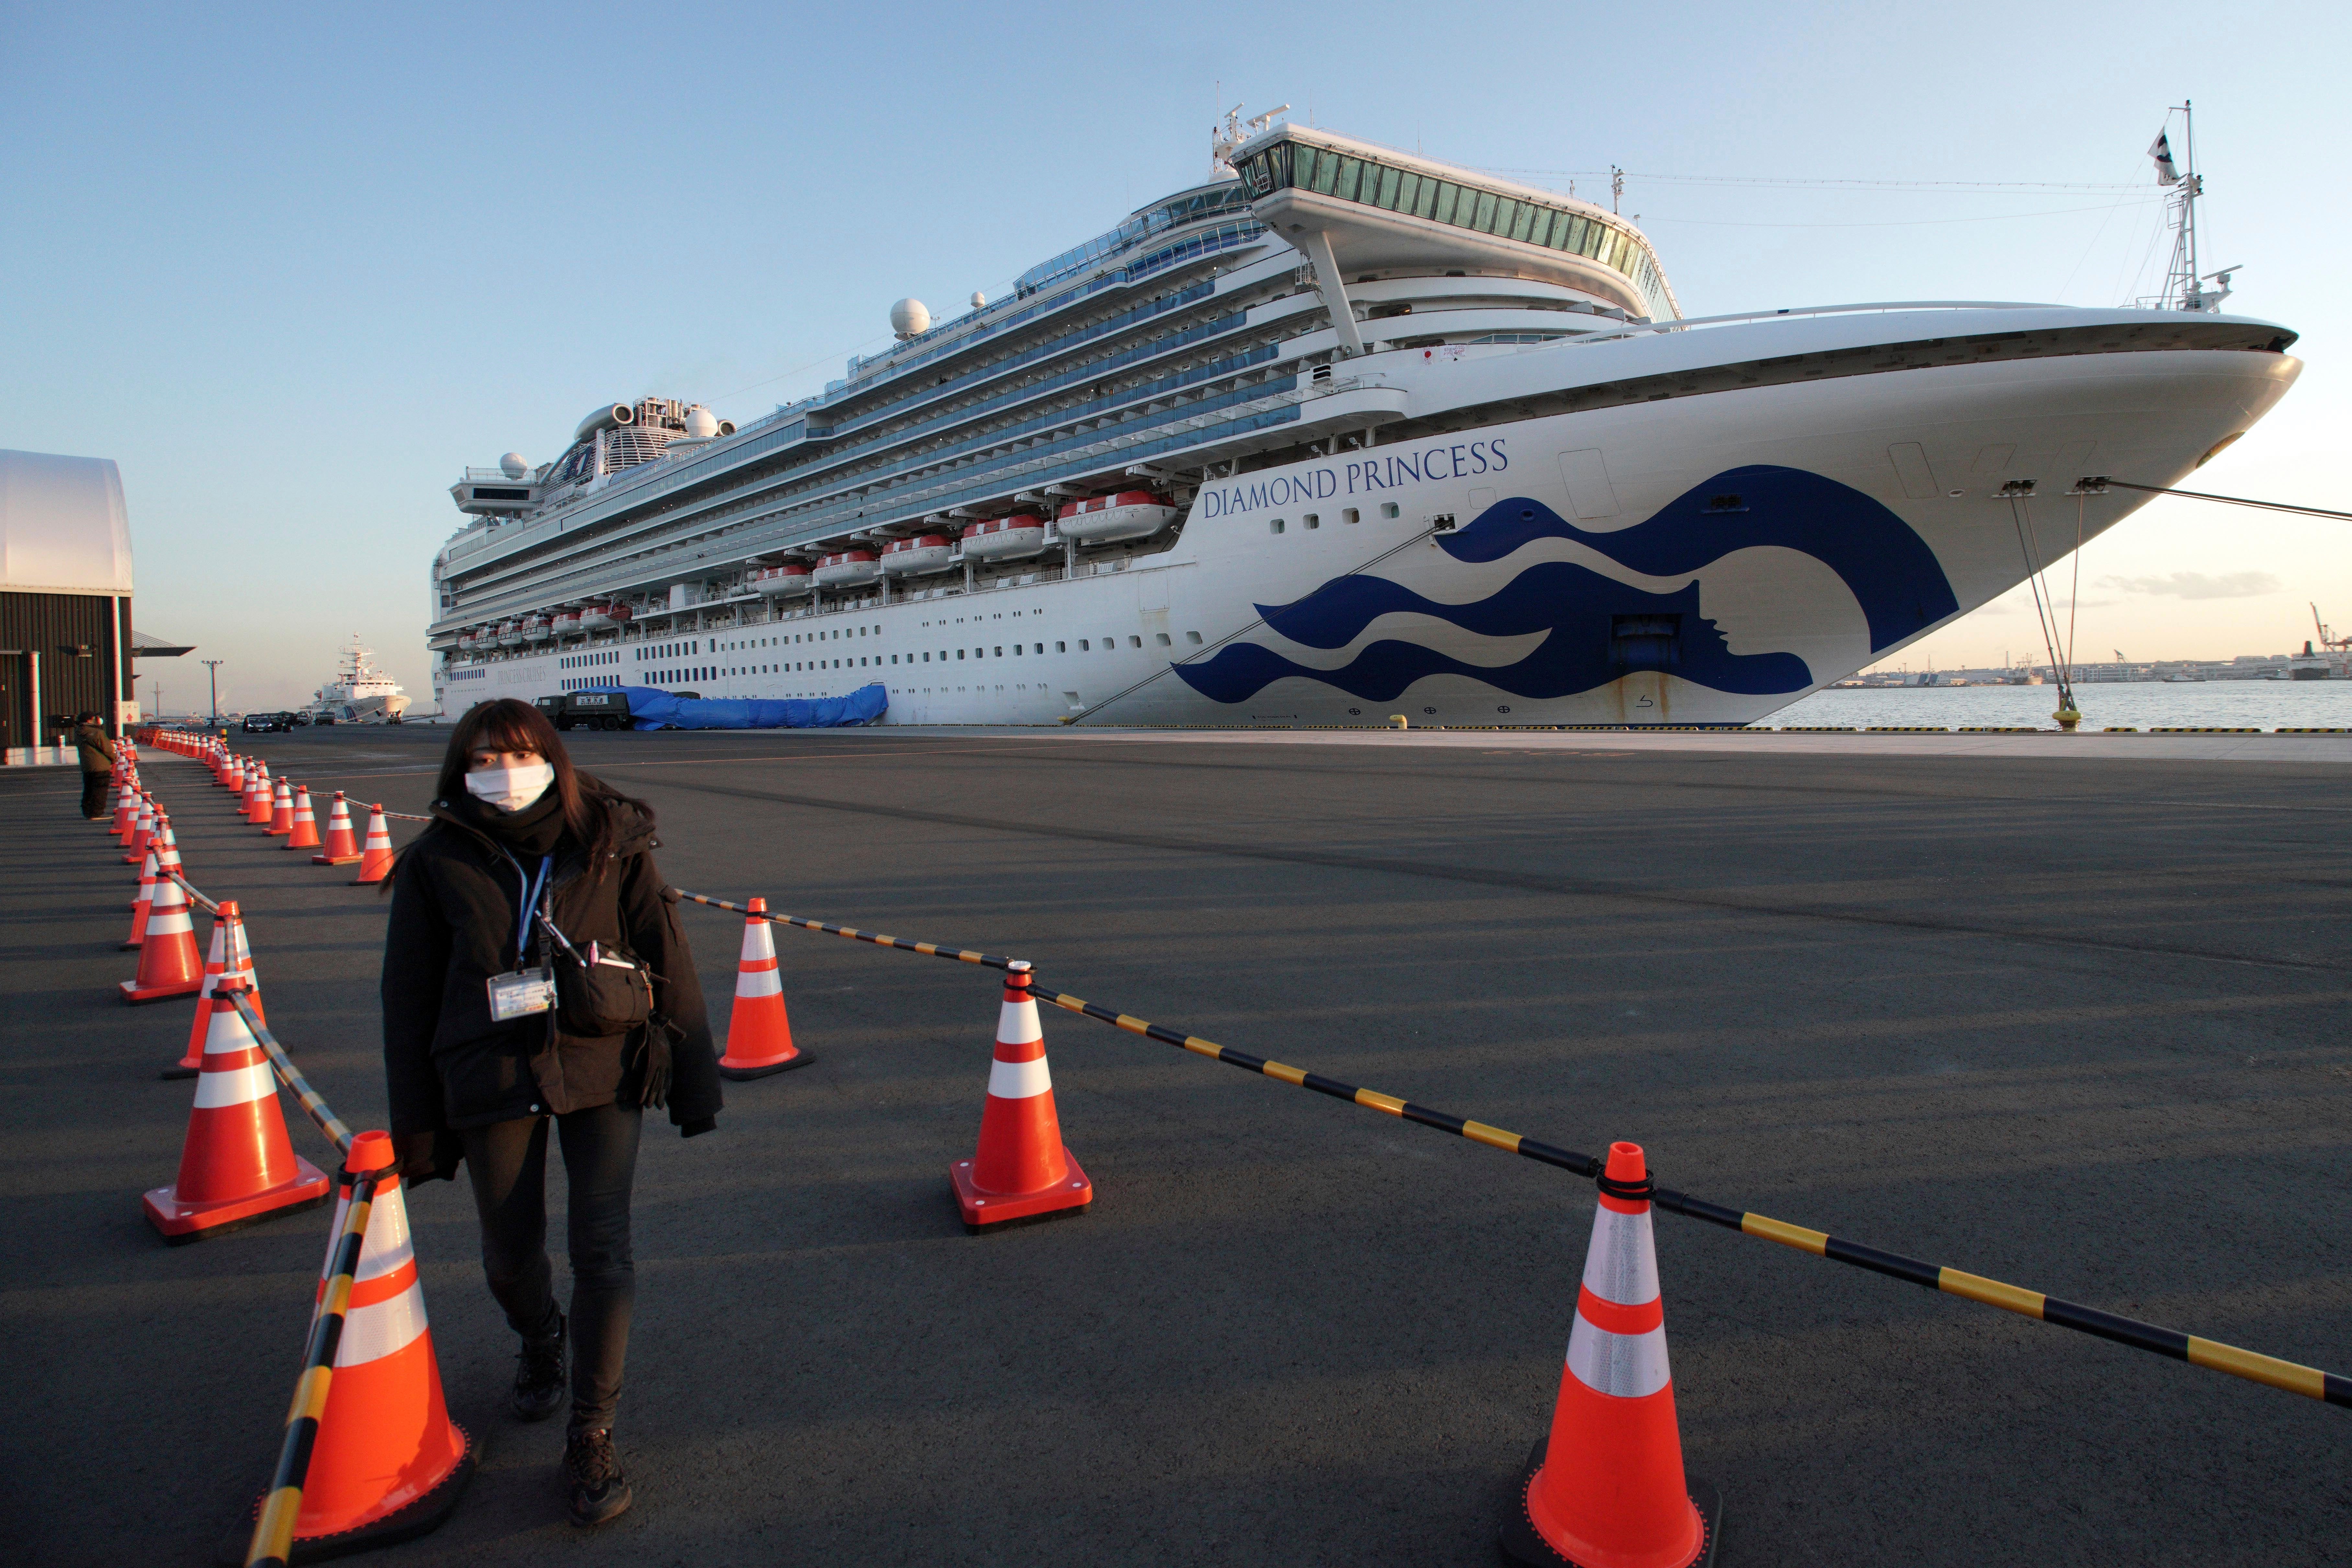 Cruise - Free porn offered to quarantined coronavirus cruise passengers | Fox  Business